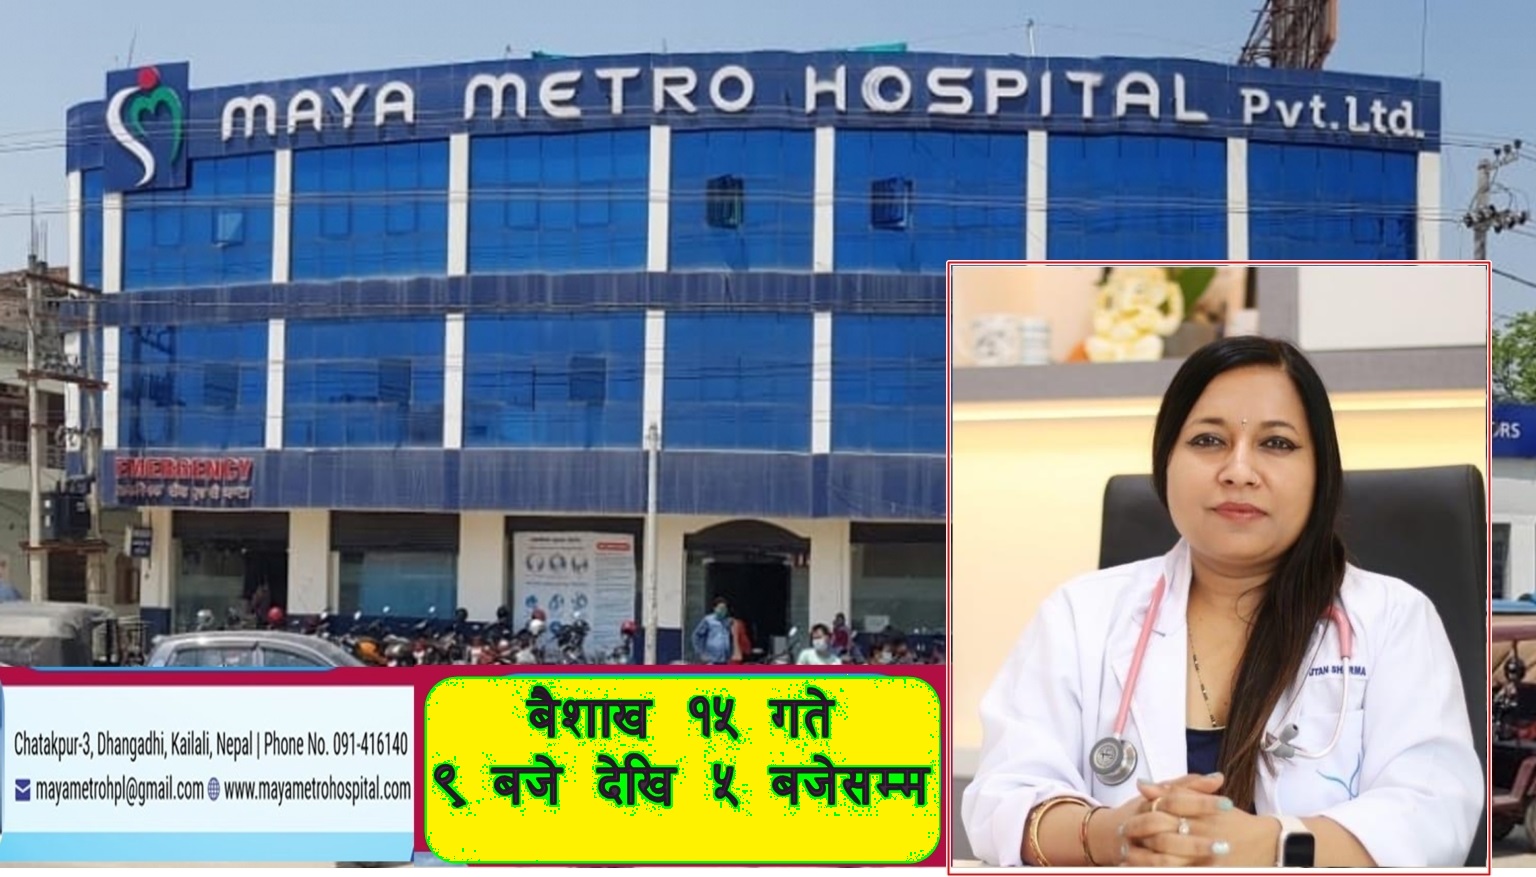 माया मेट्रो अस्पतालमा वरिष्ठ स्त्री रोग तथा टेष्टट्युब बेबी विशेषज्ञ डा.नुतन शर्मा आउँदै